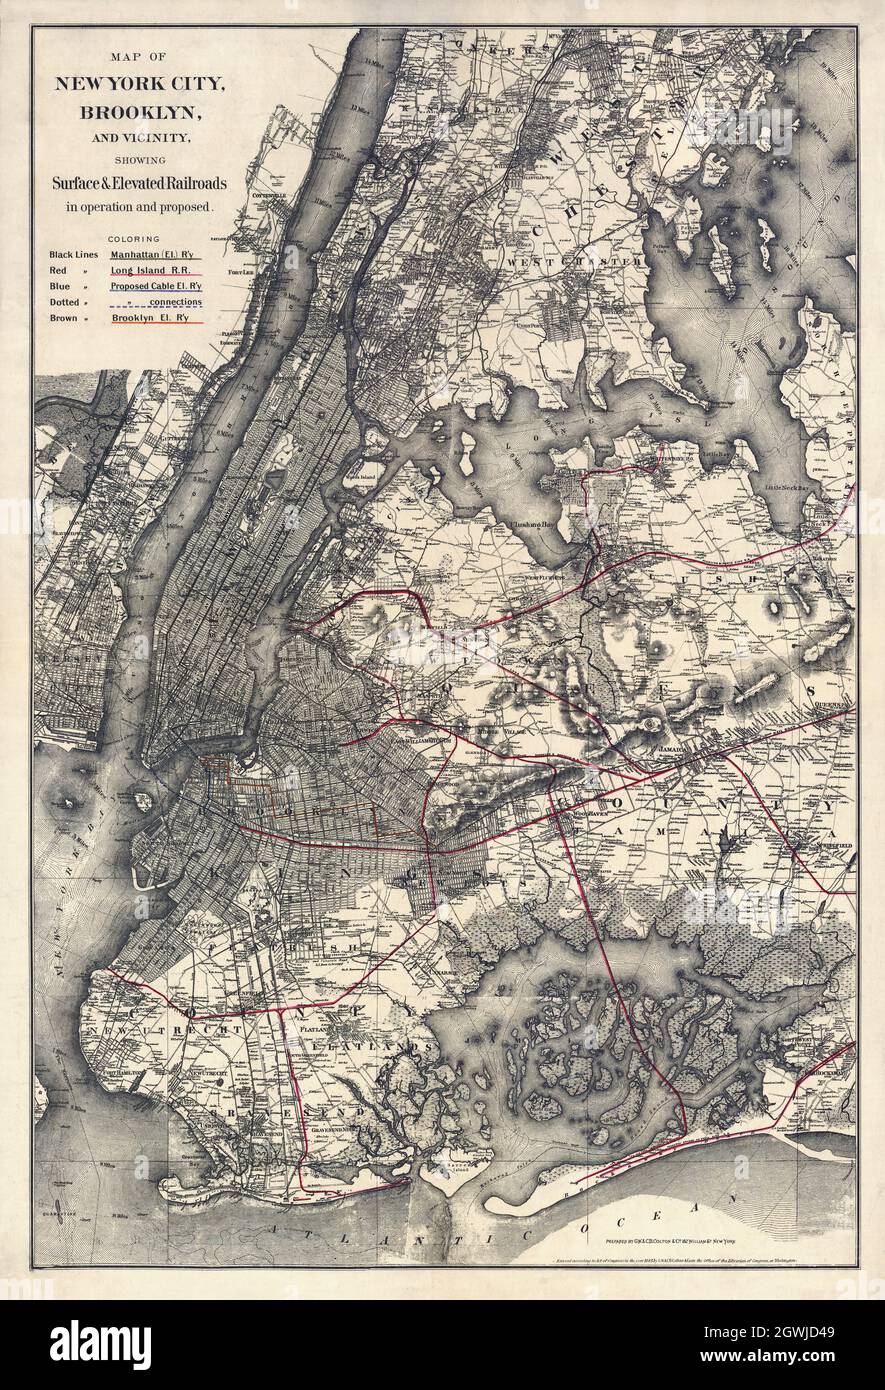 Karte von New York City, Brooklyn und Umgebung, auf der oberflächennahe und erhöhte Eisenbahnen in Betrieb und vorgeschlagen sind. Von G.W. & C. B. Colton & Co. 1885. Stockfoto